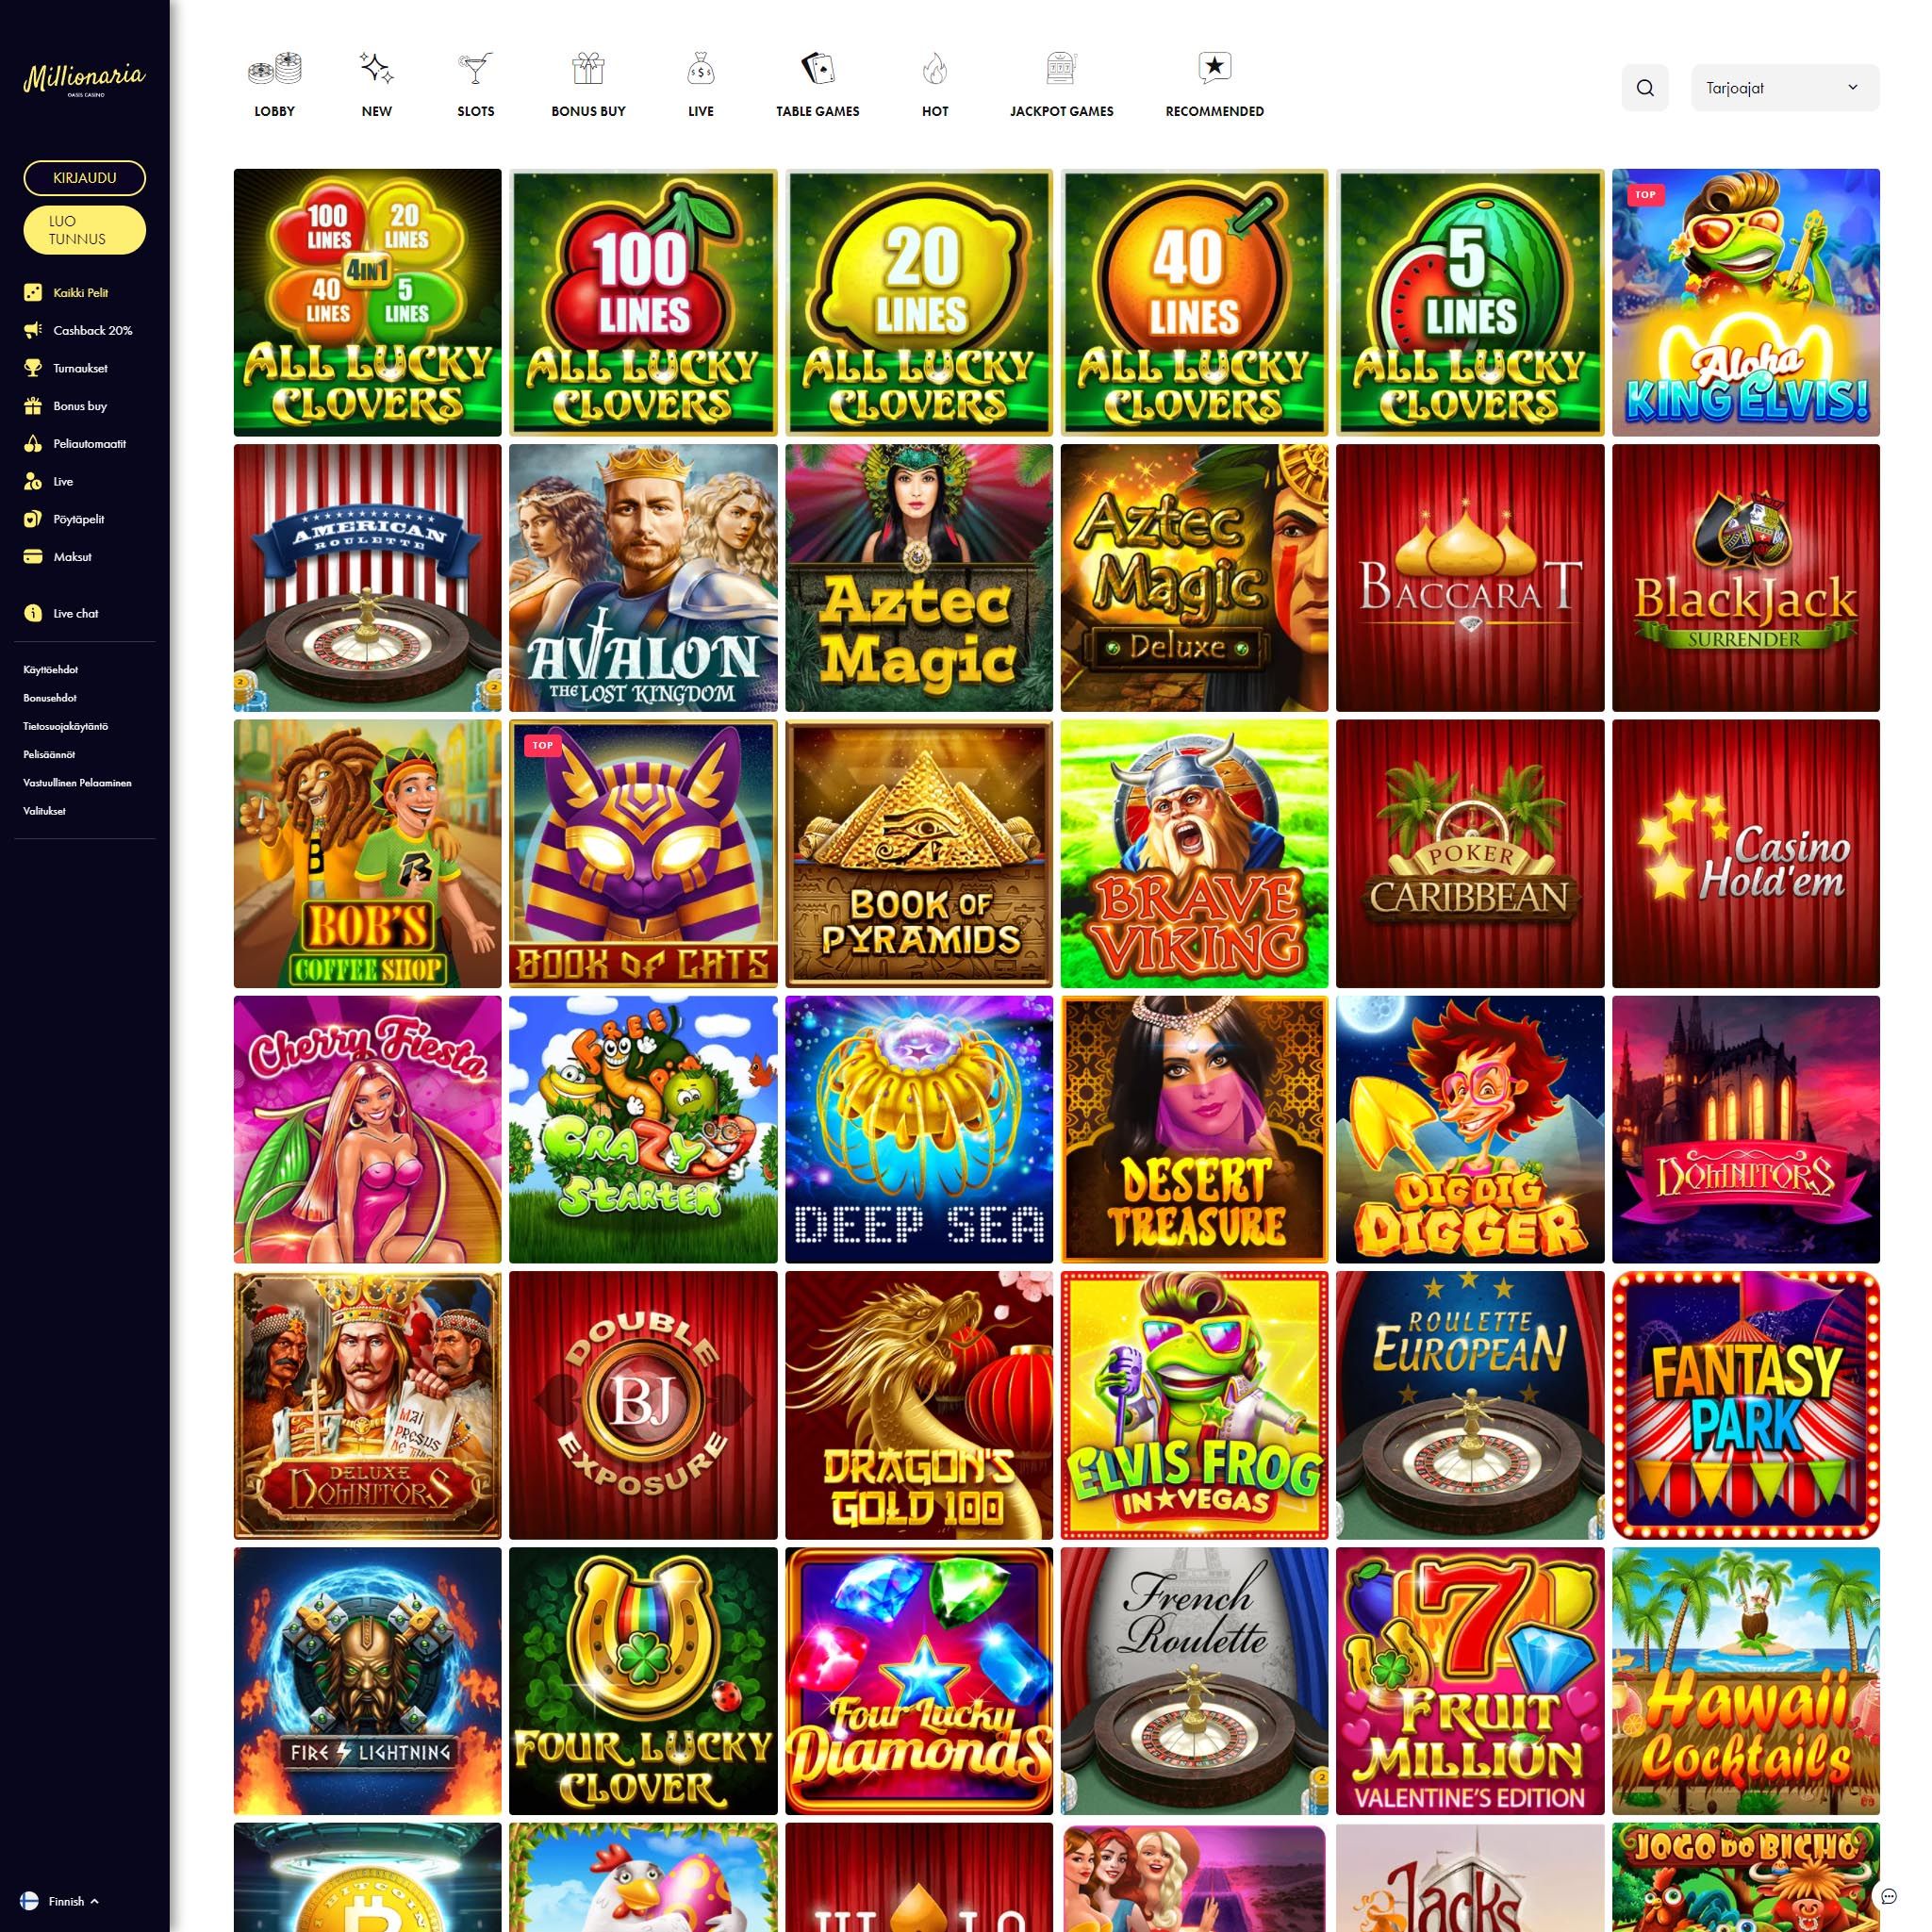 Pelaa netticasino Millionaria Casino voittaaksesi oikeaa rahaa – oikean rahan online casino! Vertaa kaikki nettikasinot ja löydä parhaat casinot Suomessa.